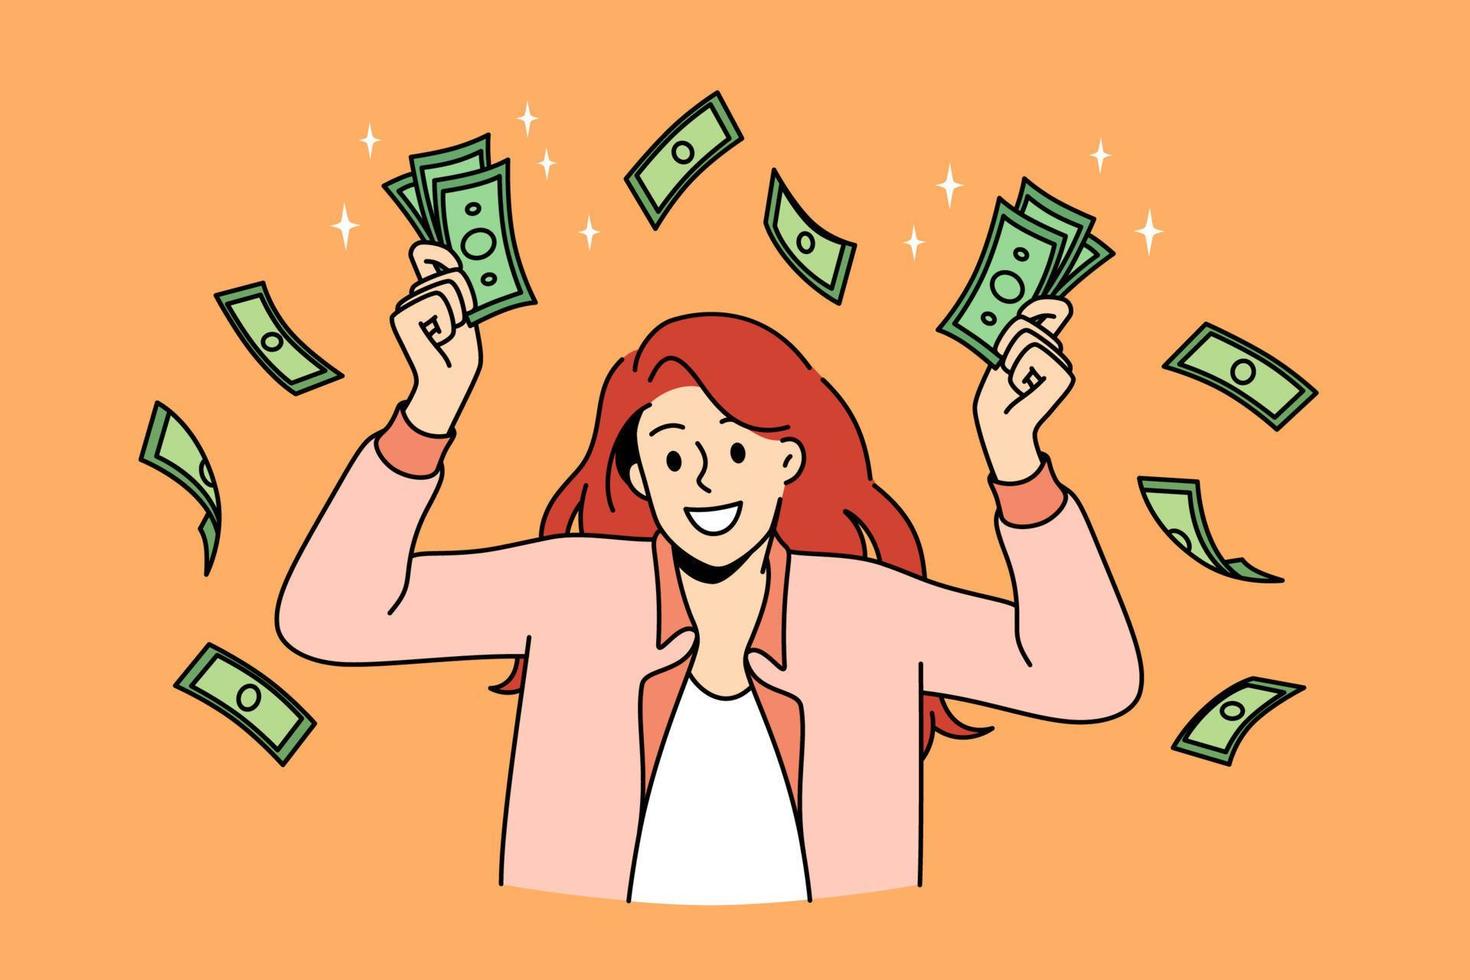 sucesso financeiro e conceito de riqueza. jovem sorridente personagem de desenho animado em pé segurando montes de dinheiro verde nas mãos ilustração vetorial vetor